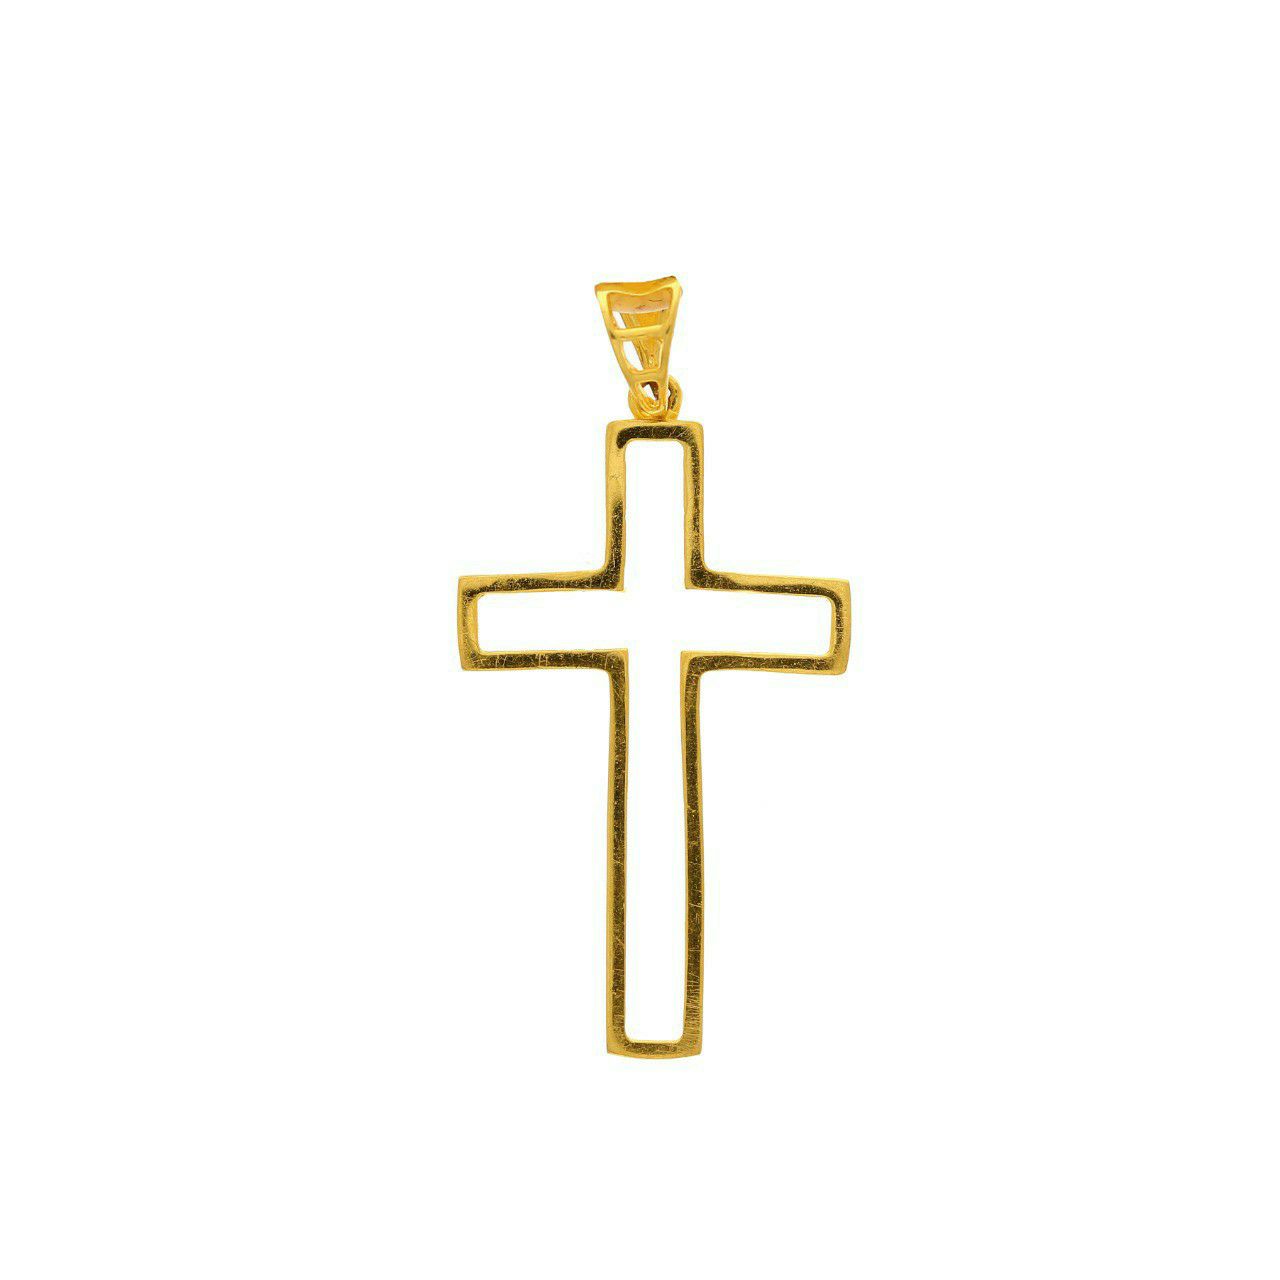 Cross religious gold pendant